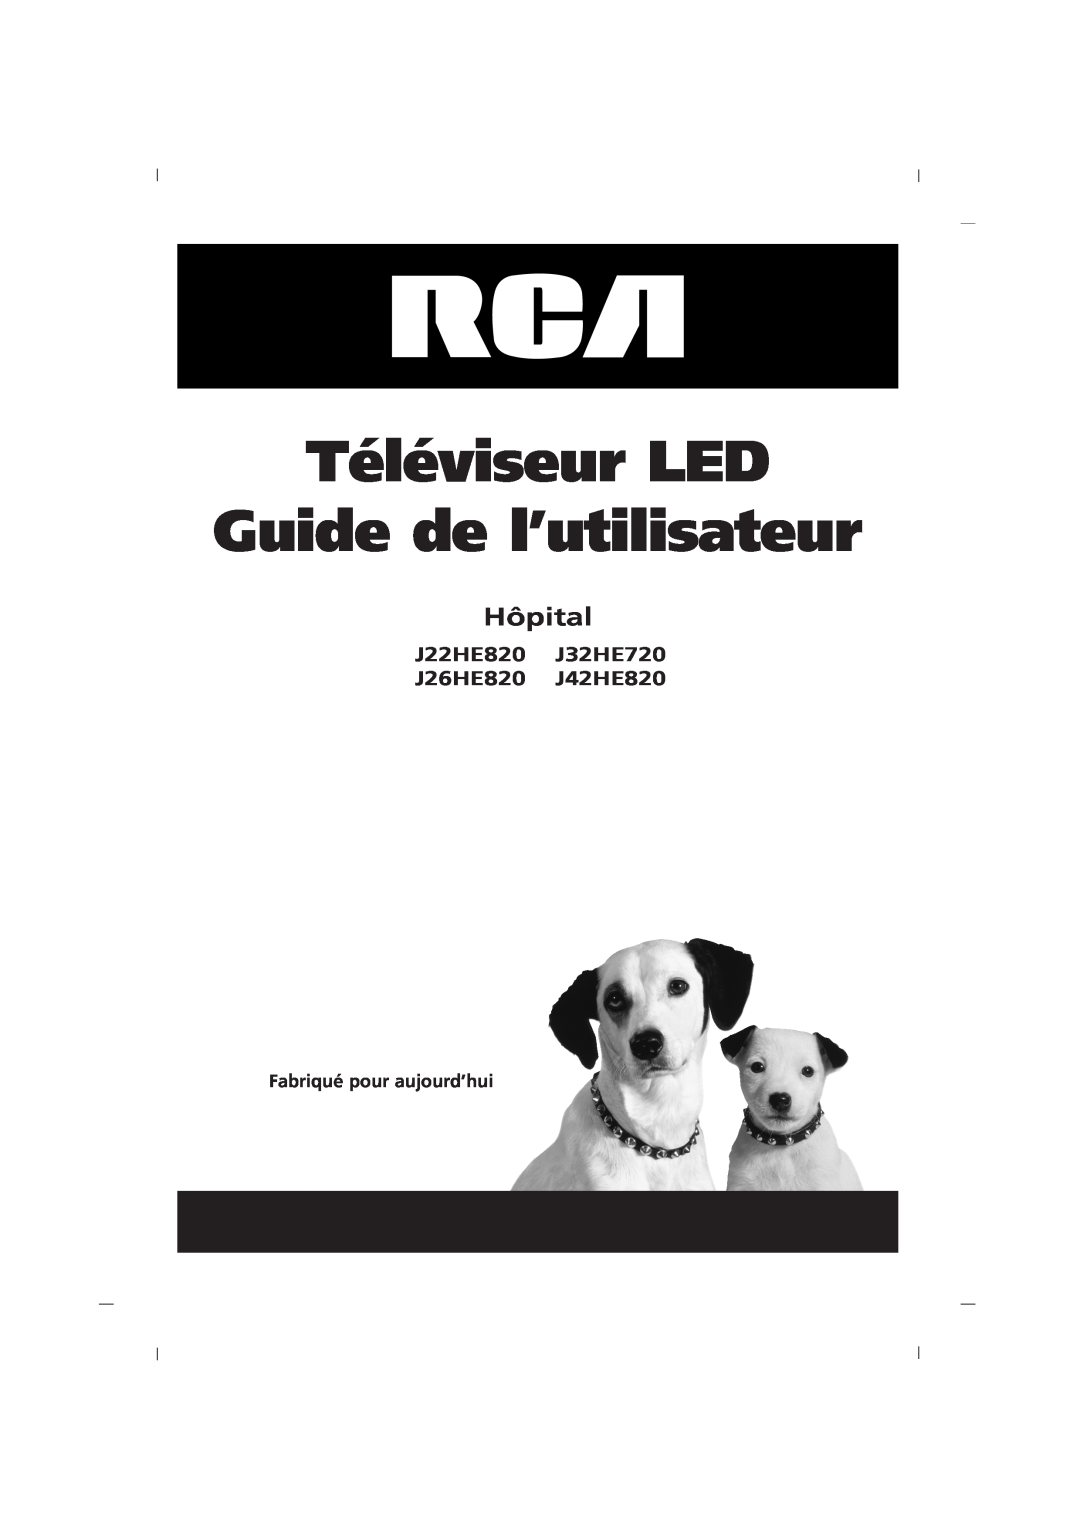 RCA J26HE820, J32HE720, J42HE820 manual Téléviseur LED Guide de l’utilisateur, Hôpital, Fabriqué pour aujourd’hui 